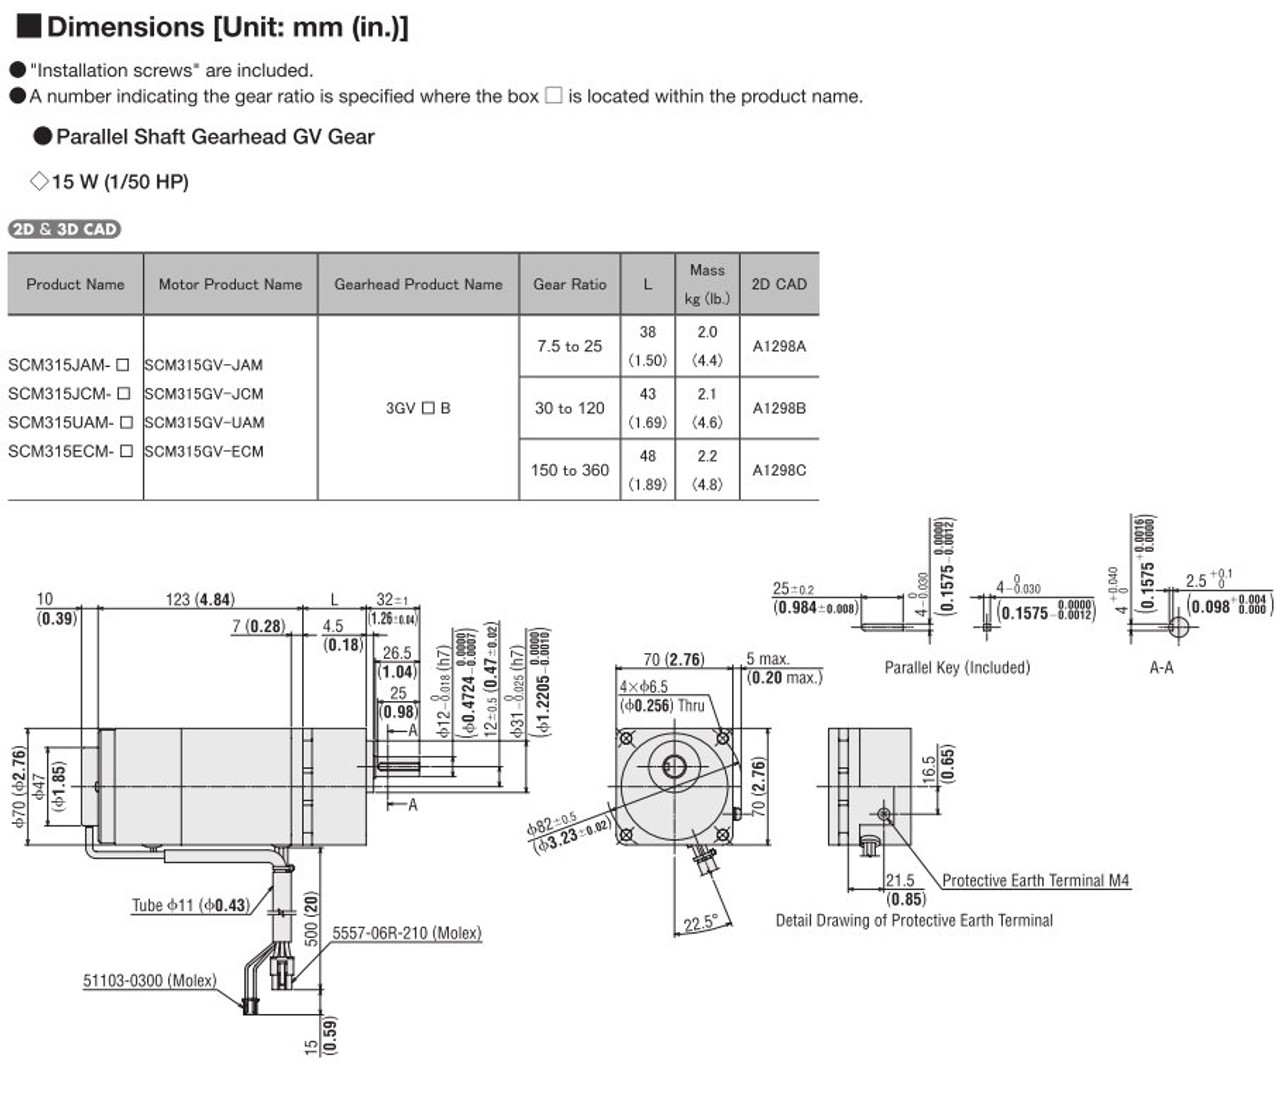 SCM315ECM-300 / DSCD15ECM - Dimensions